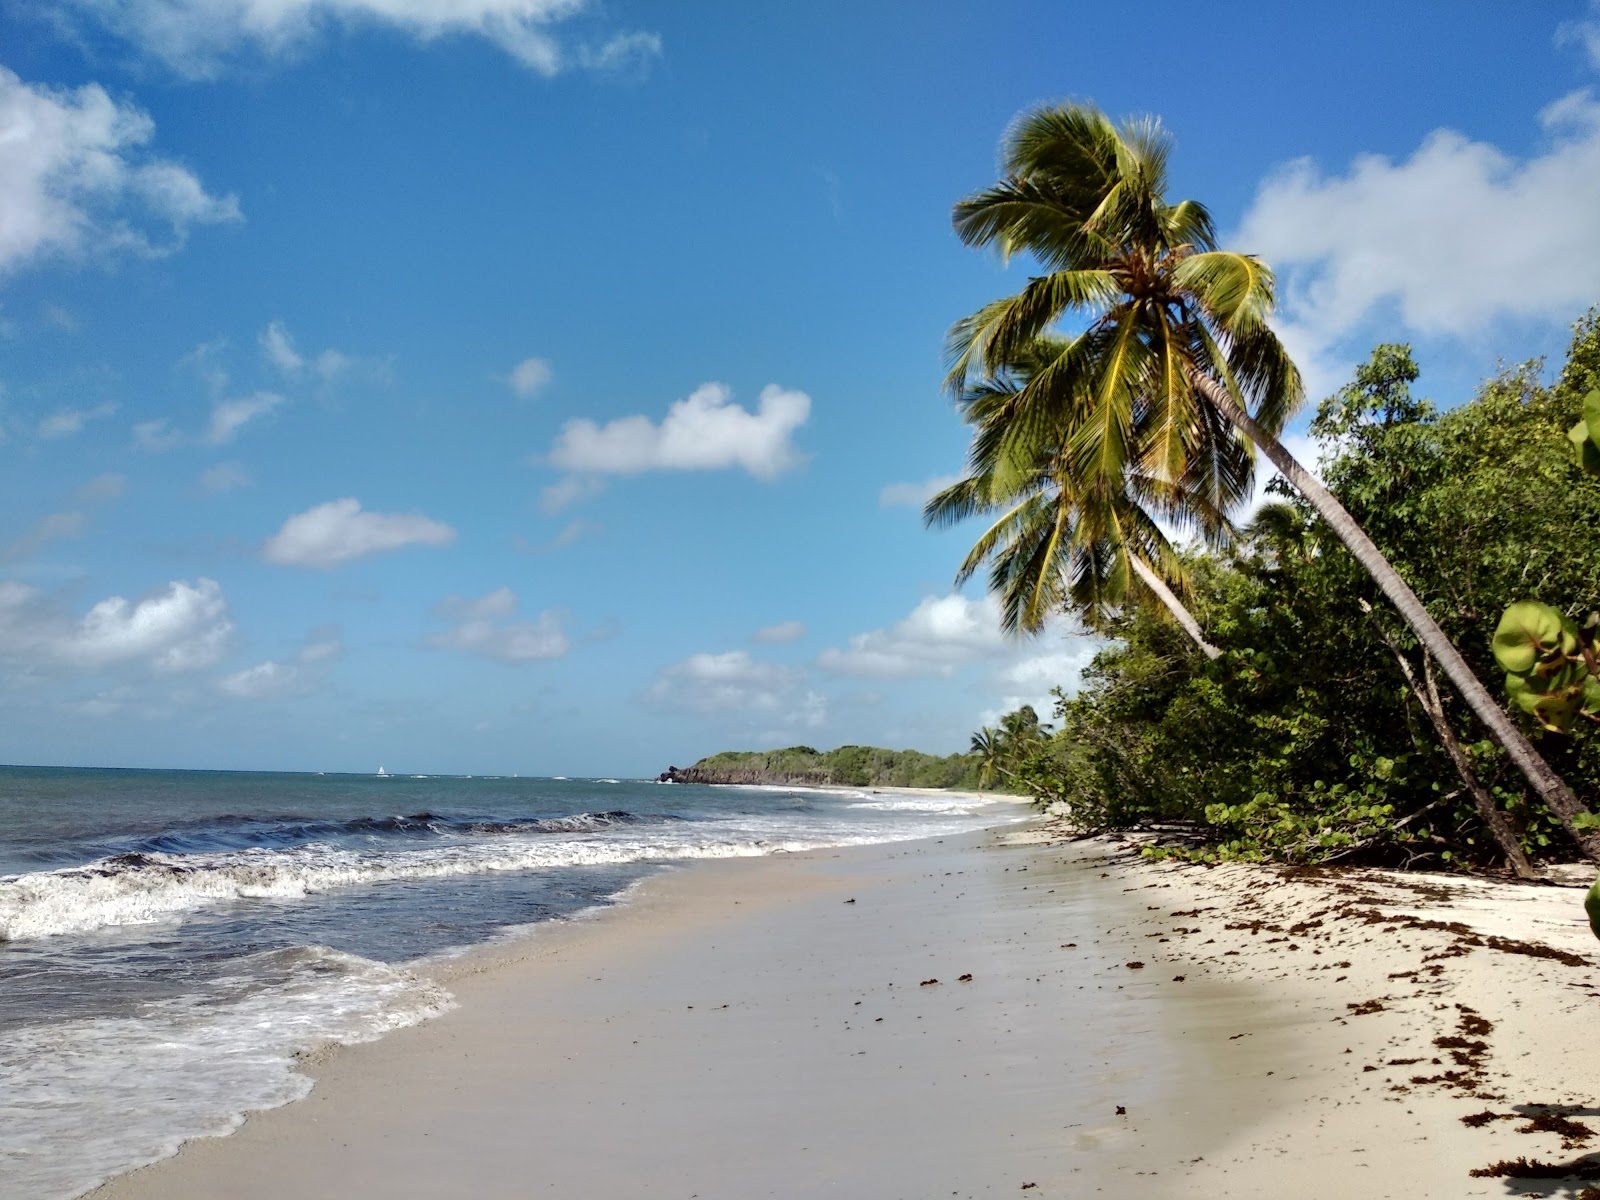 Zdjęcie Grande terre beach położony w naturalnym obszarze